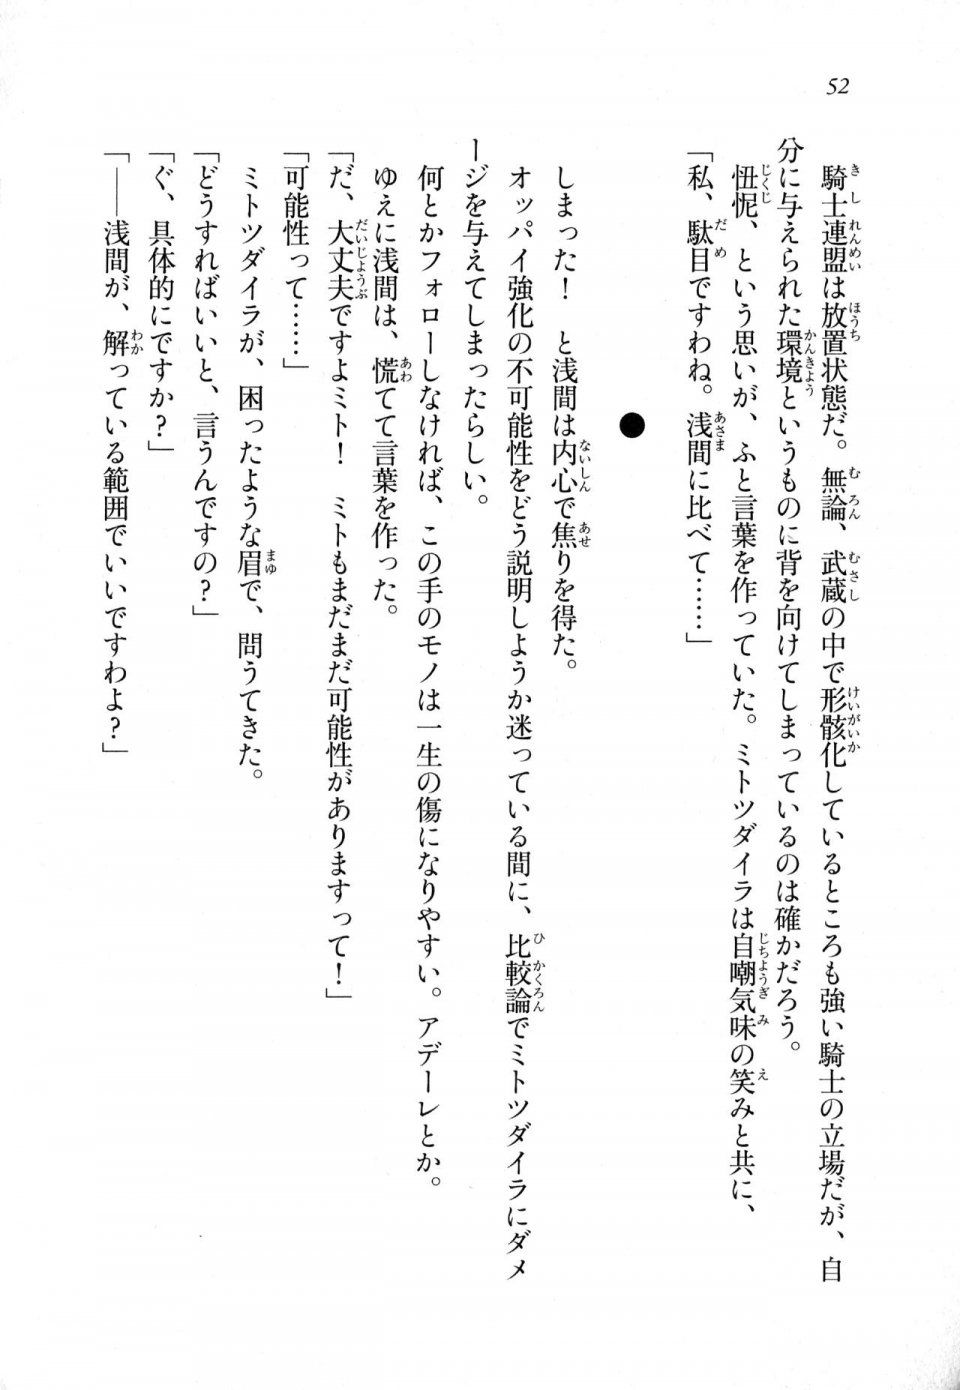 Kyoukai Senjou no Horizon LN Sidestory Vol 1 - Photo #50